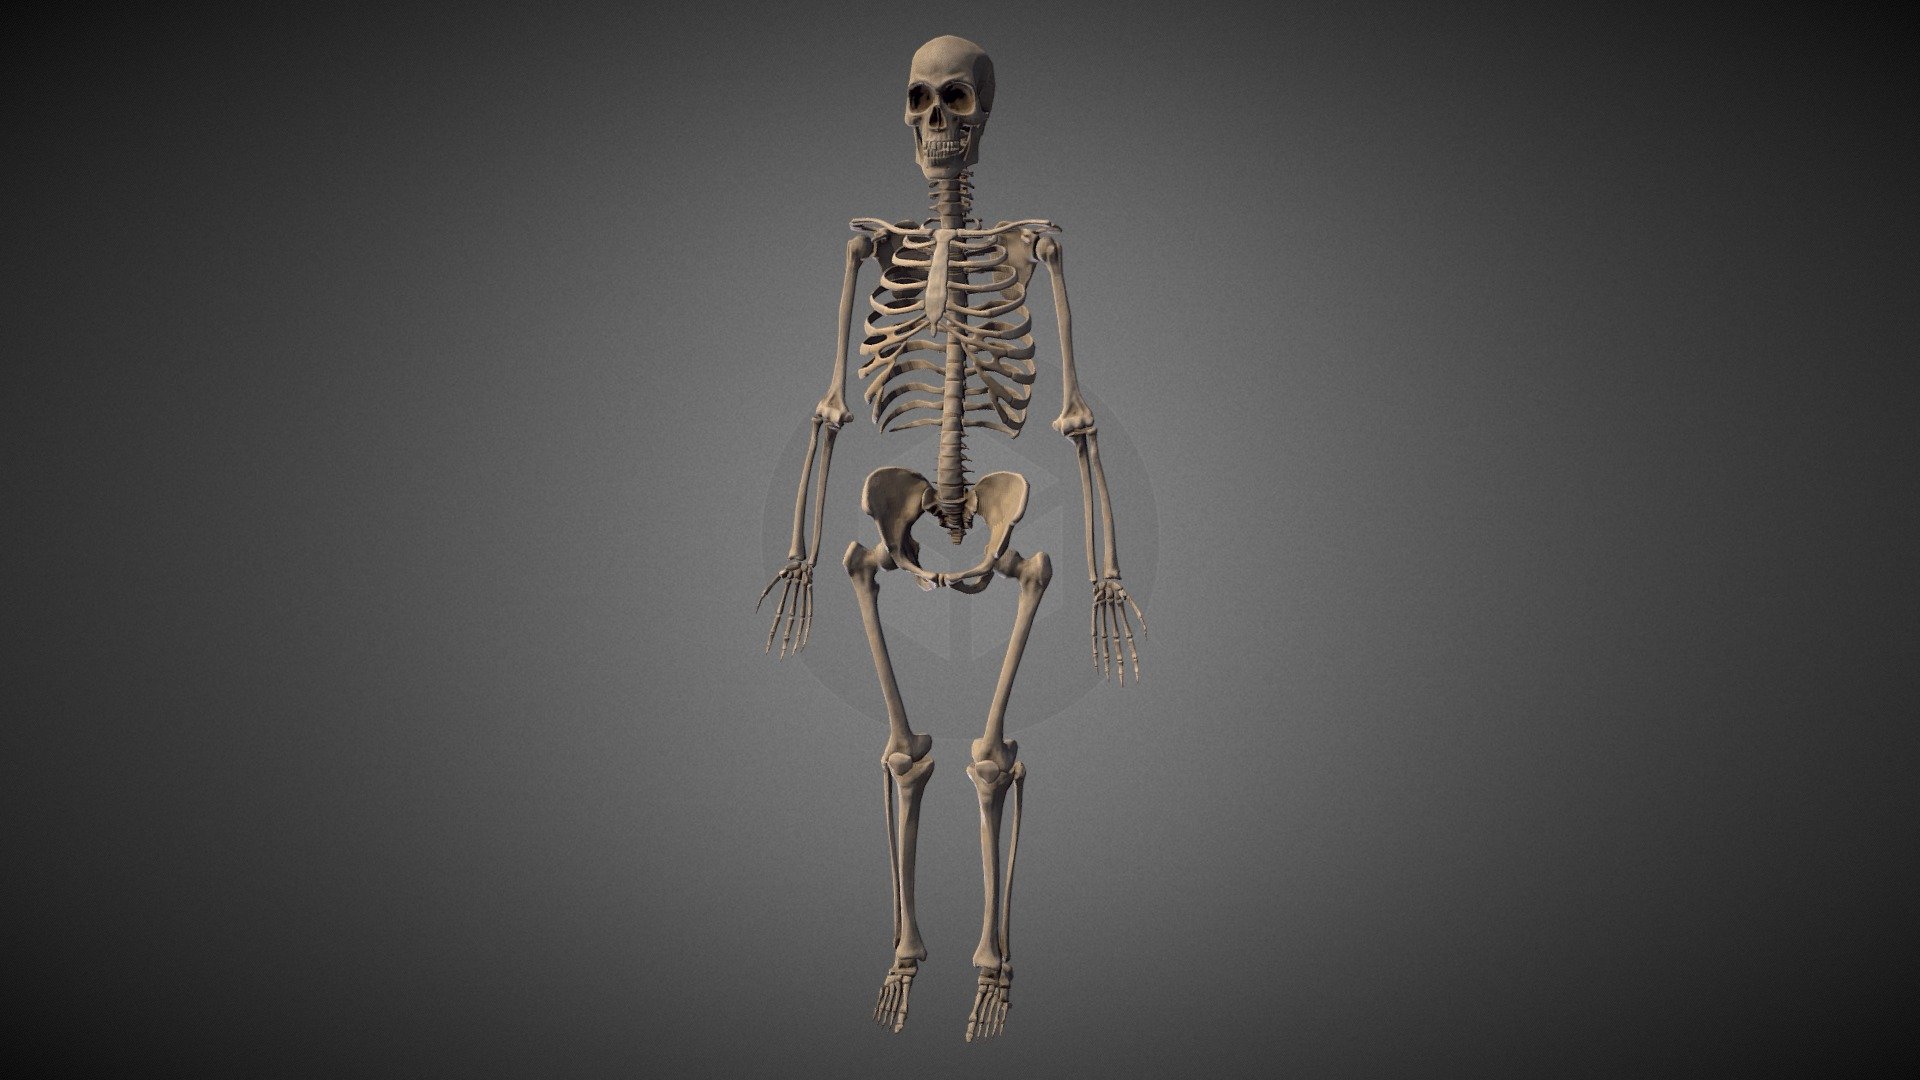 Ткань скелета человека